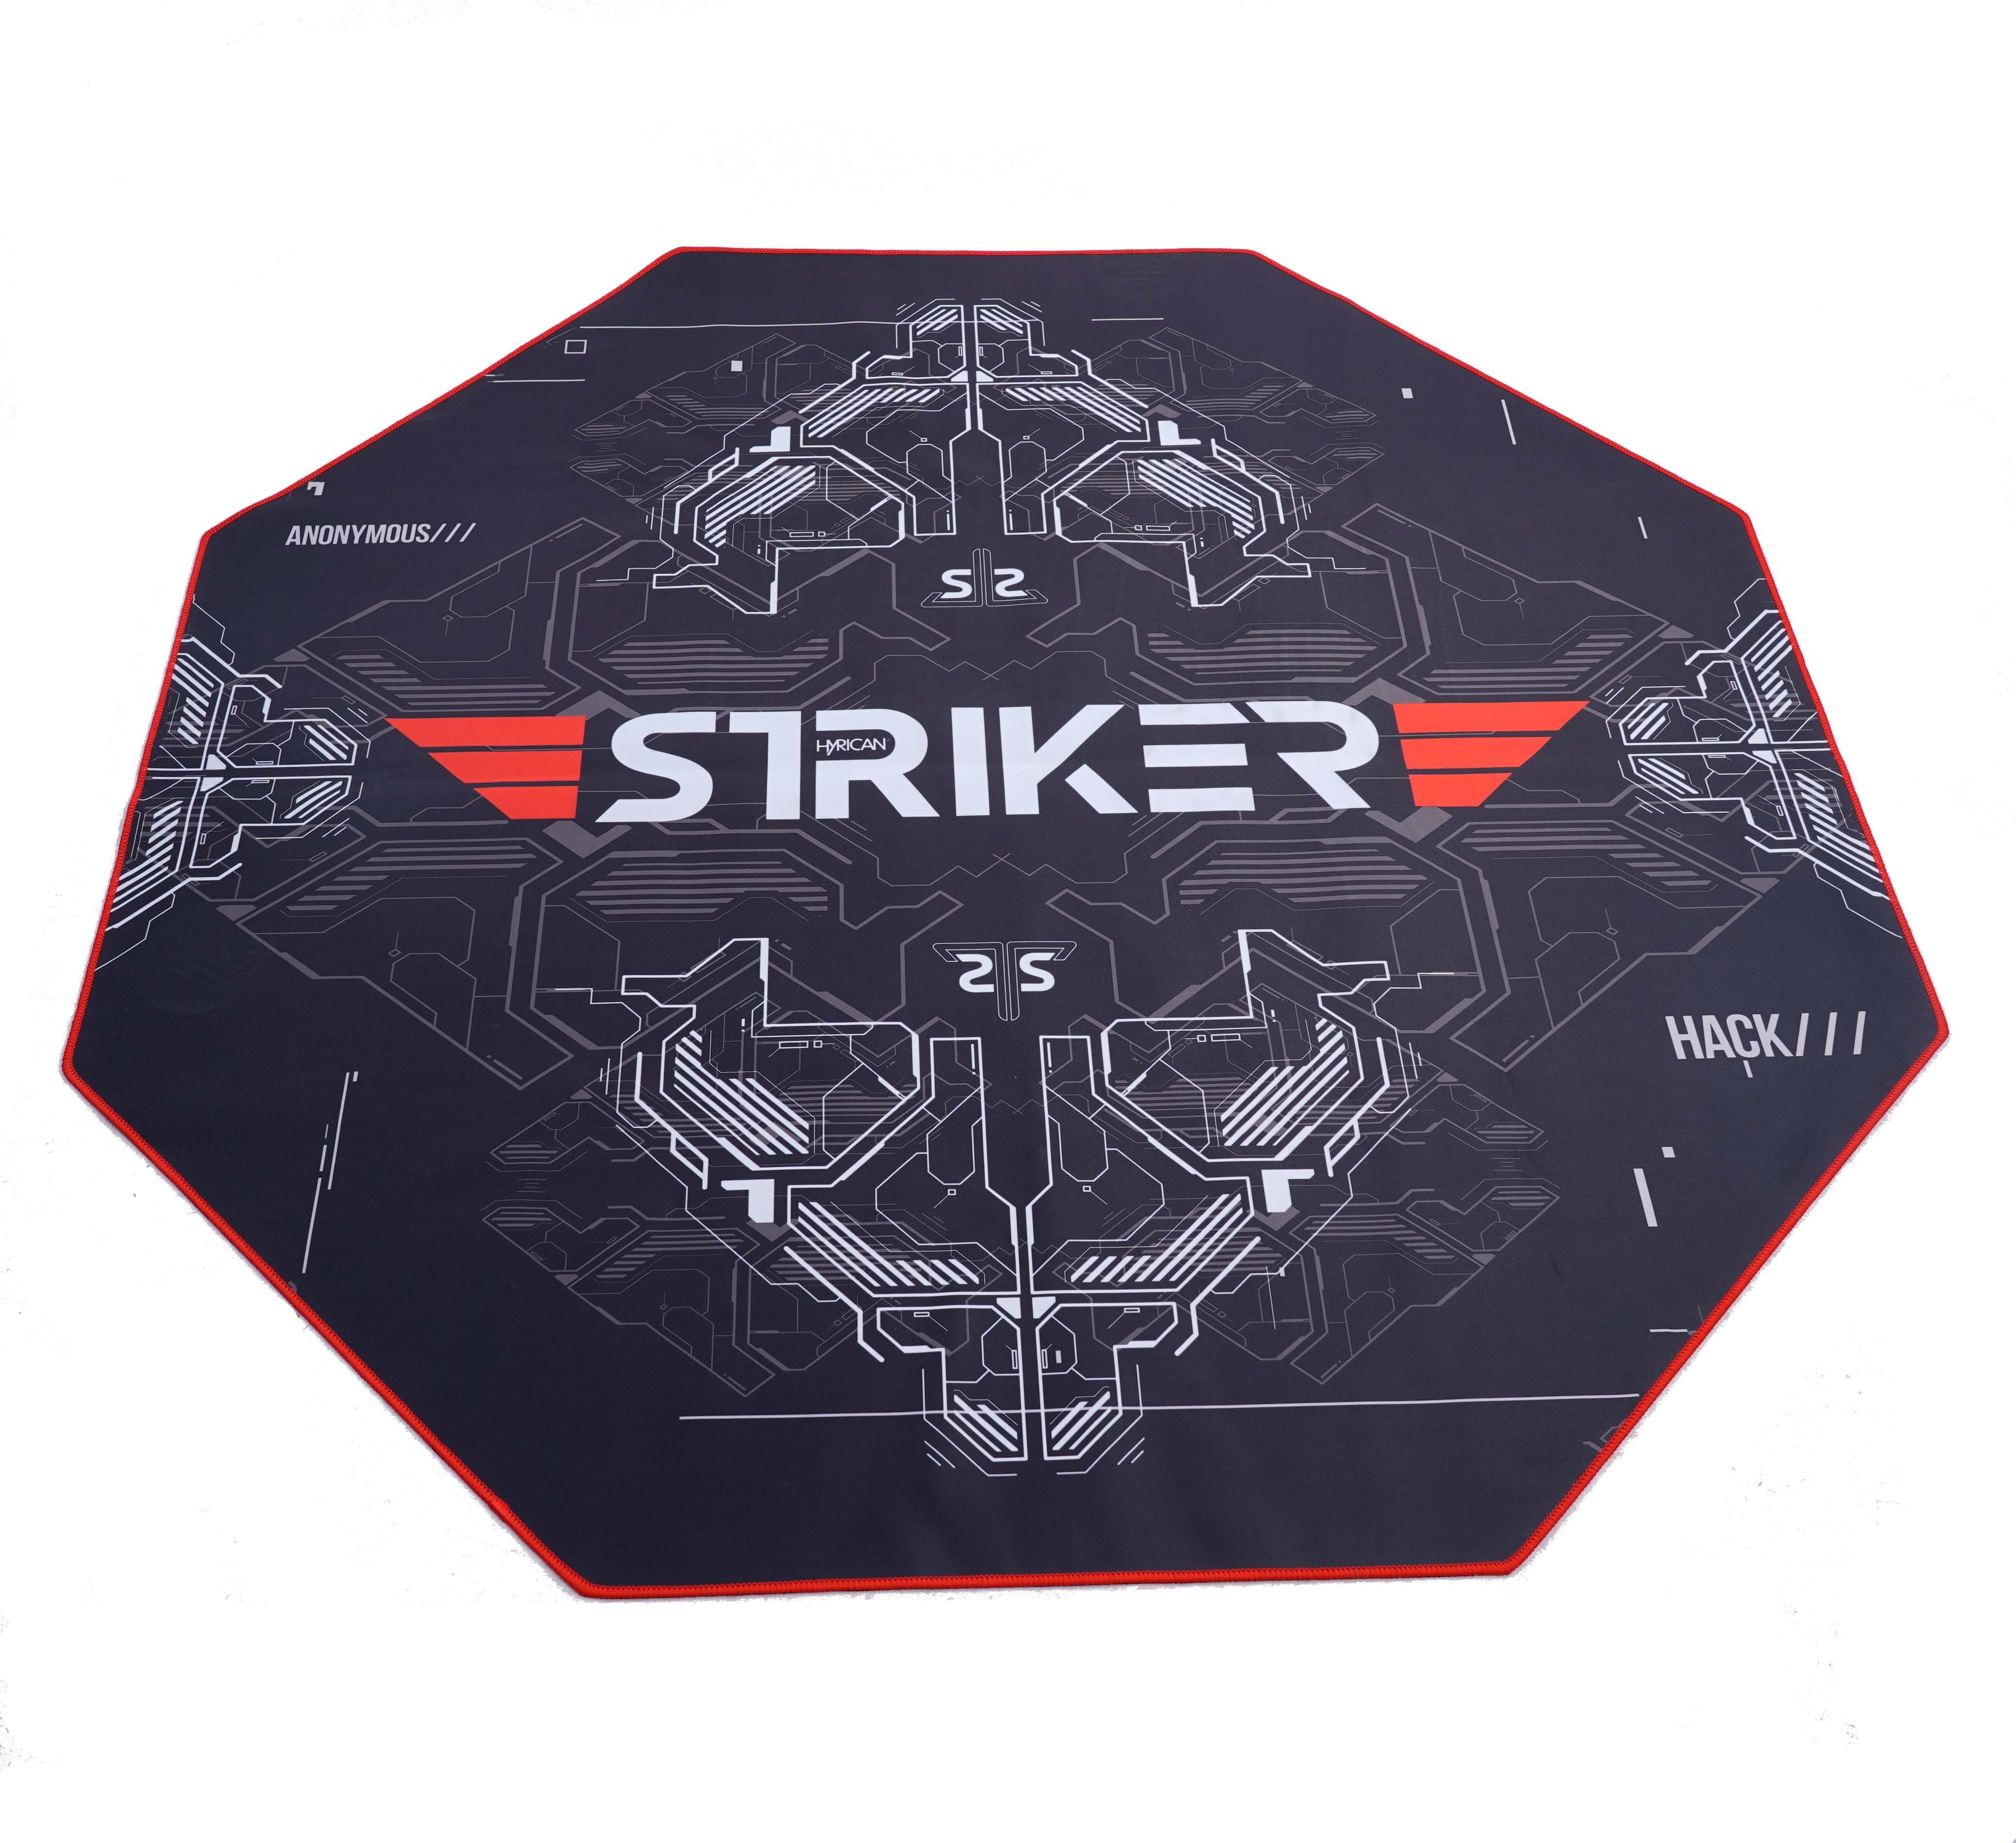 Striker Hyrican Gamingstuhl, 3D-Armlehnen "Comander" Gaming-Stuhl ergonomischer Gaming-Stuhl